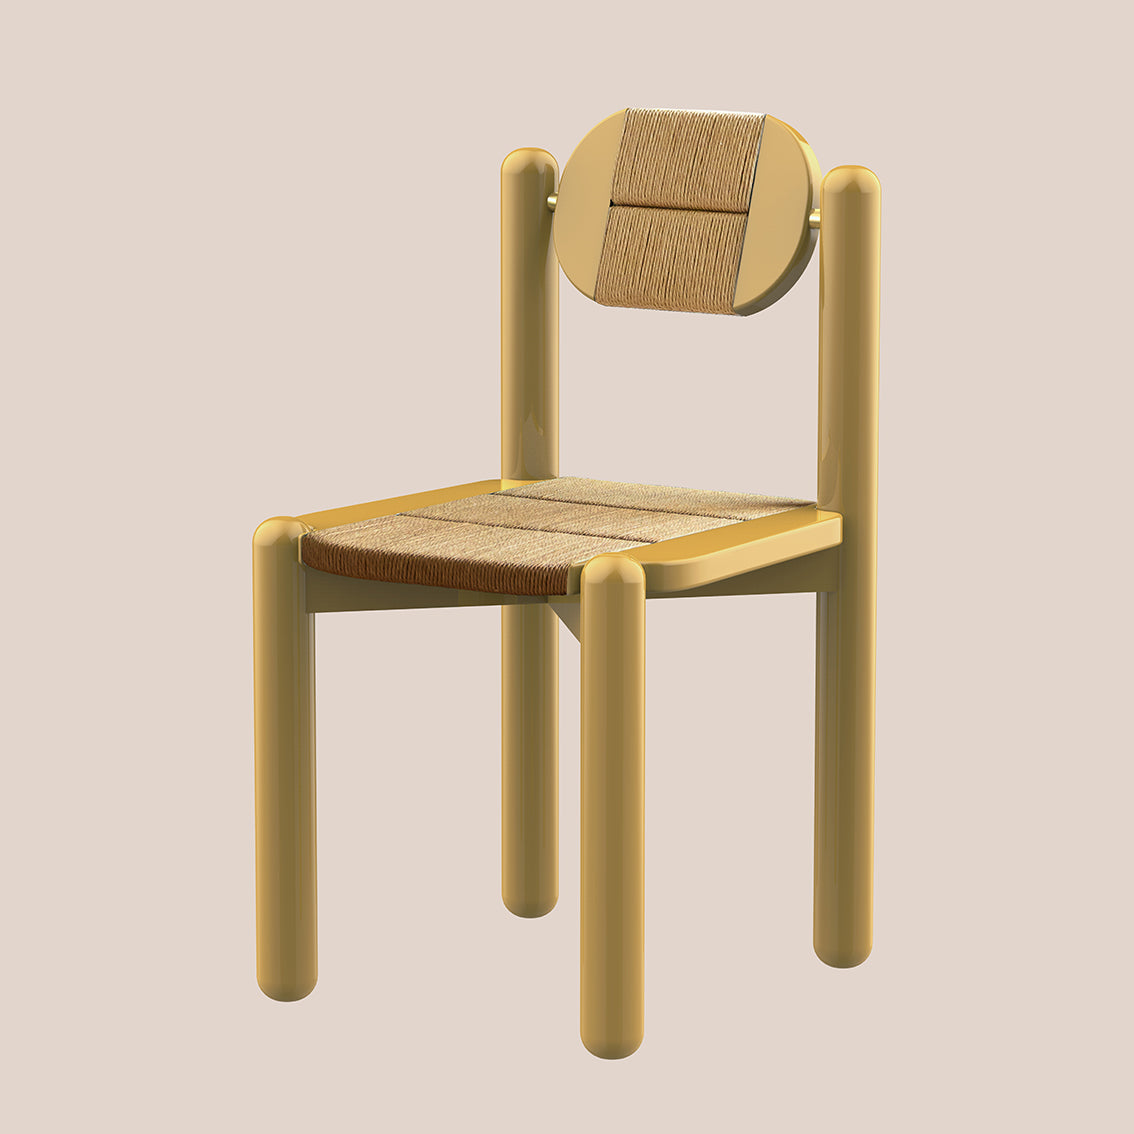 Mirèio, woven chair